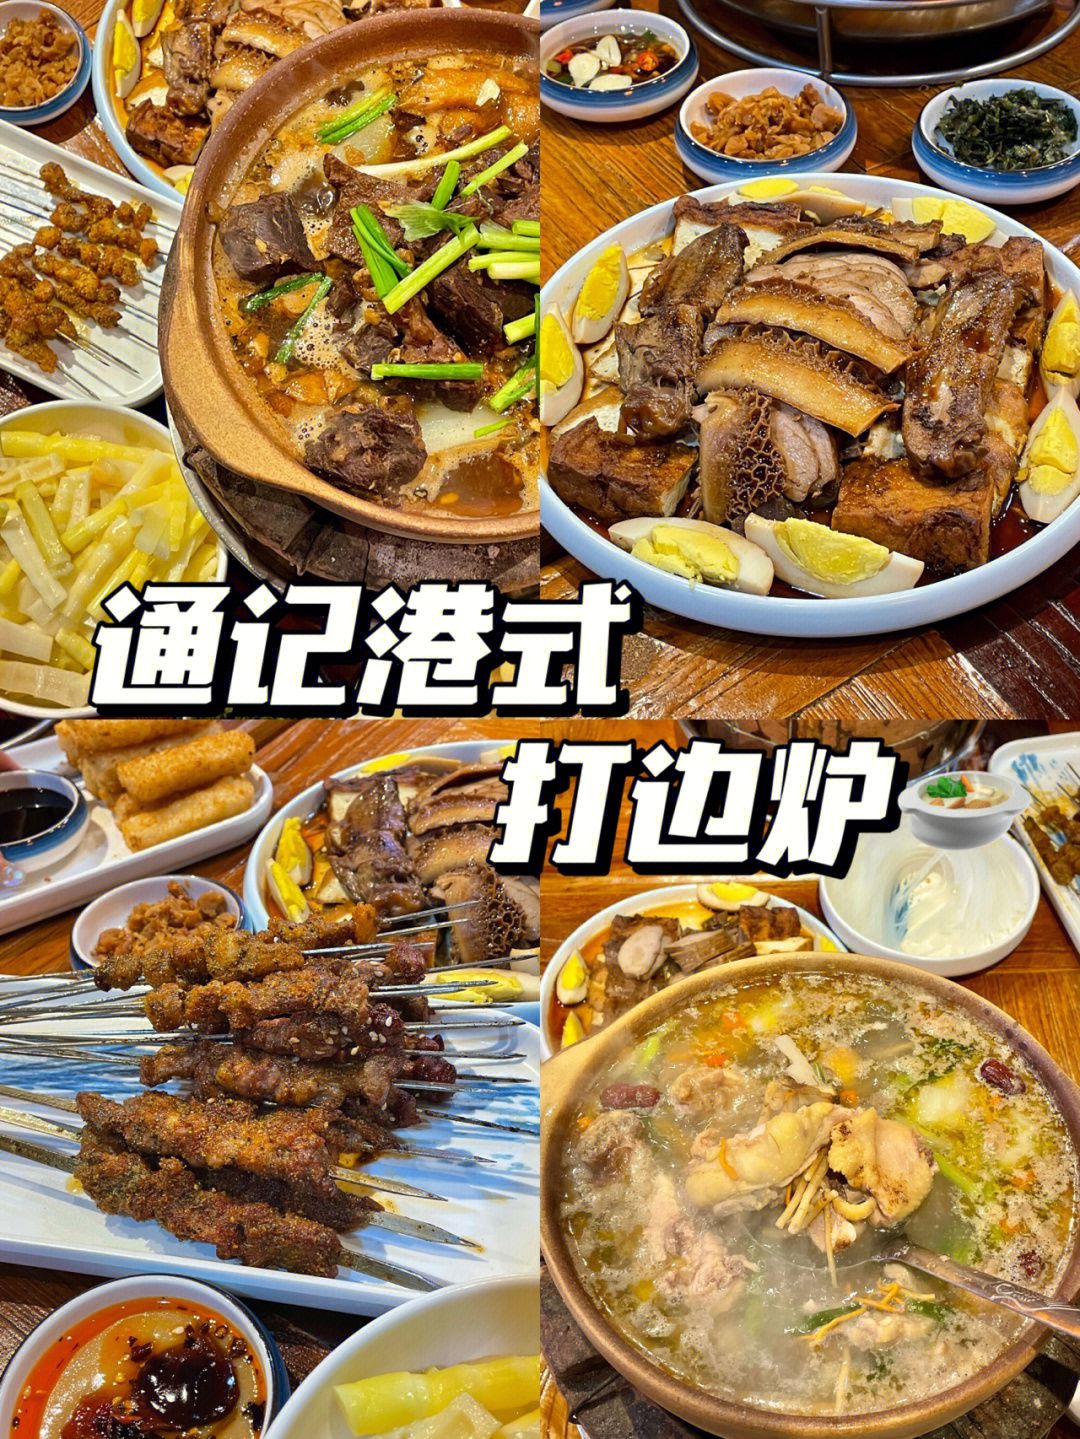 粤式打边炉菜谱图片